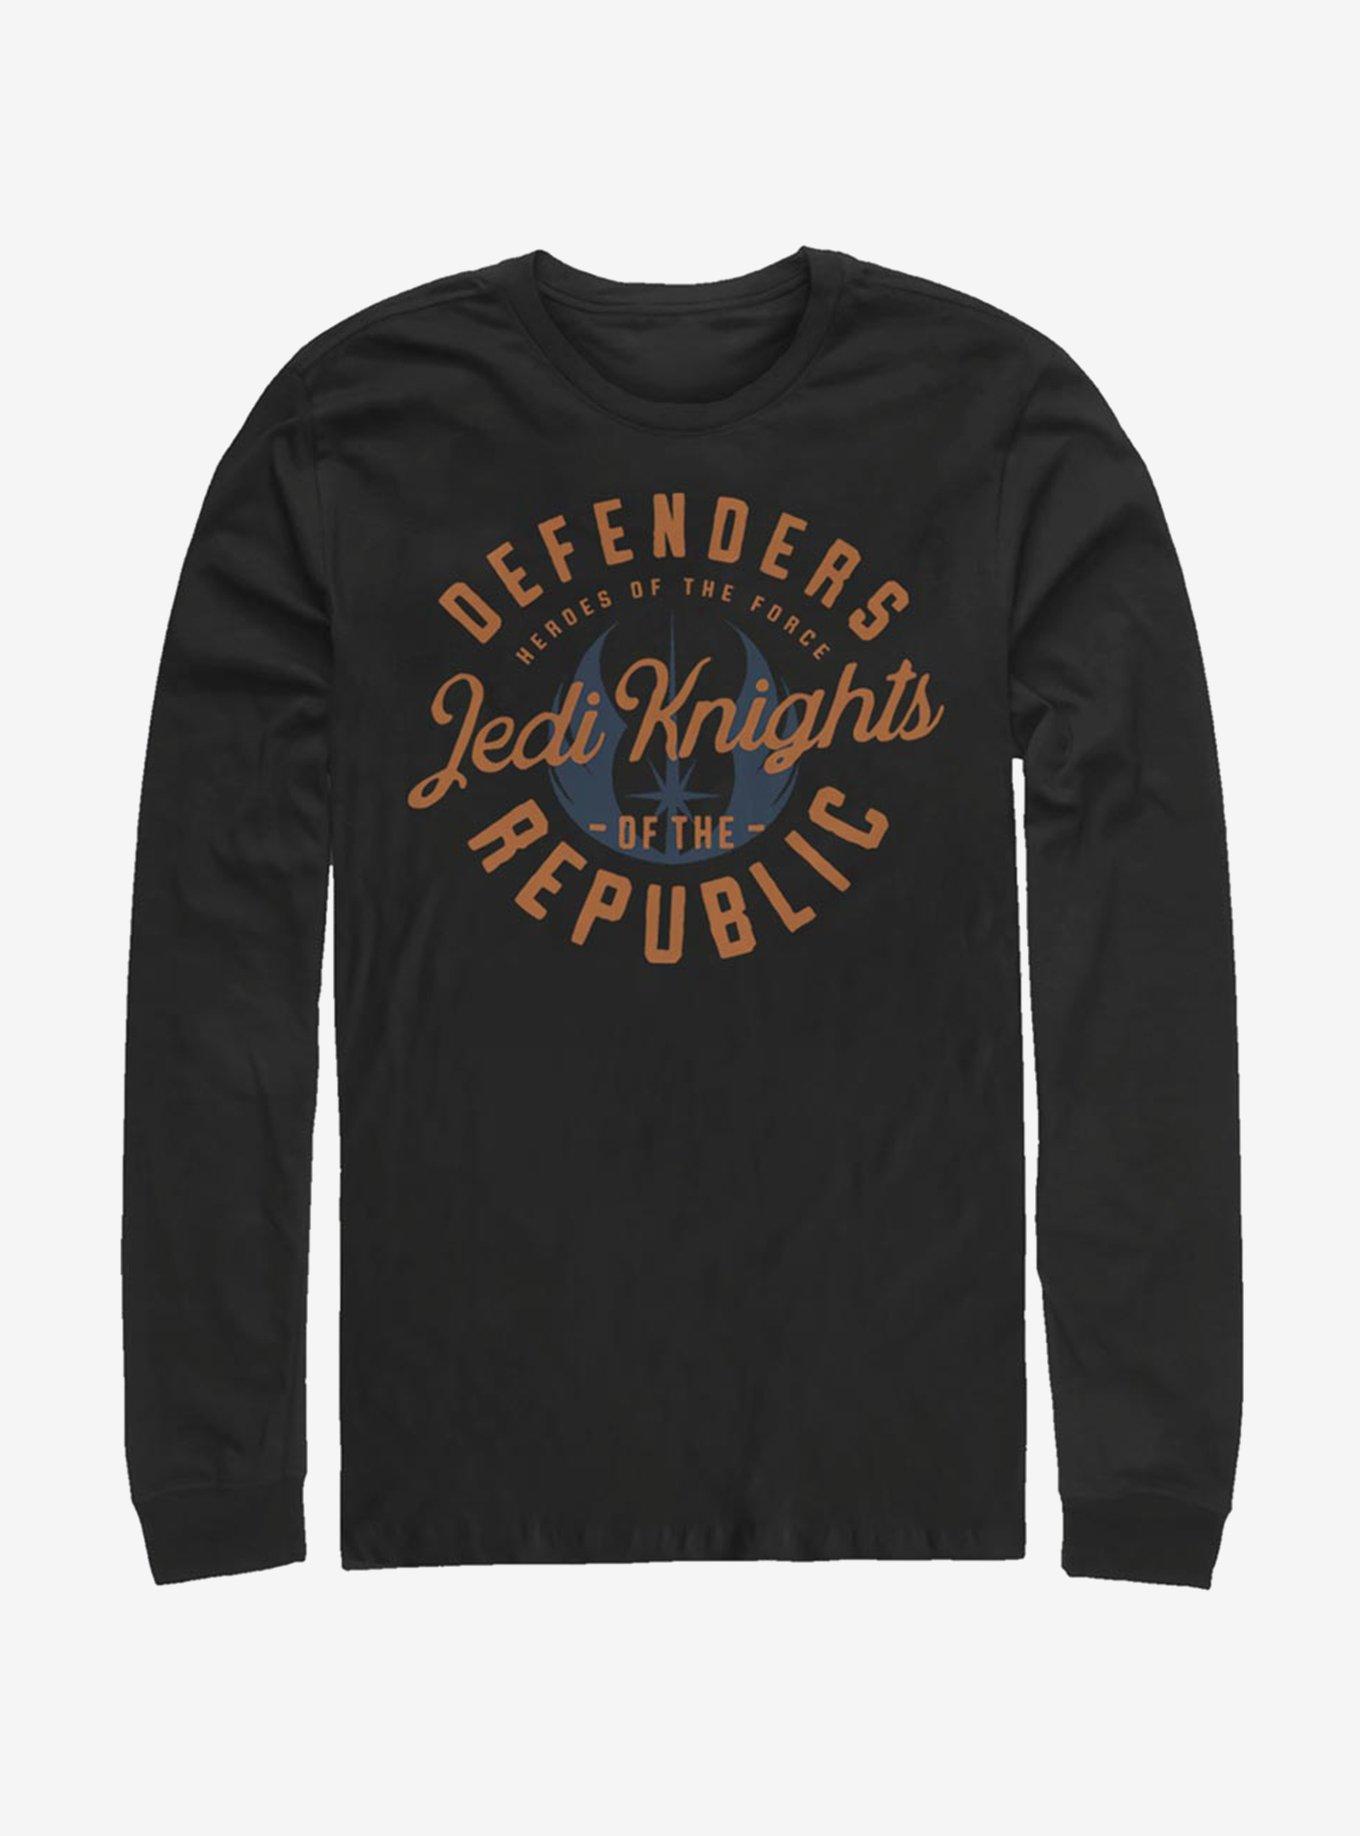 Star Wars The Clone Wars Jedi Knights Emblem Long-Sleeve T-Shirt, BLACK, hi-res